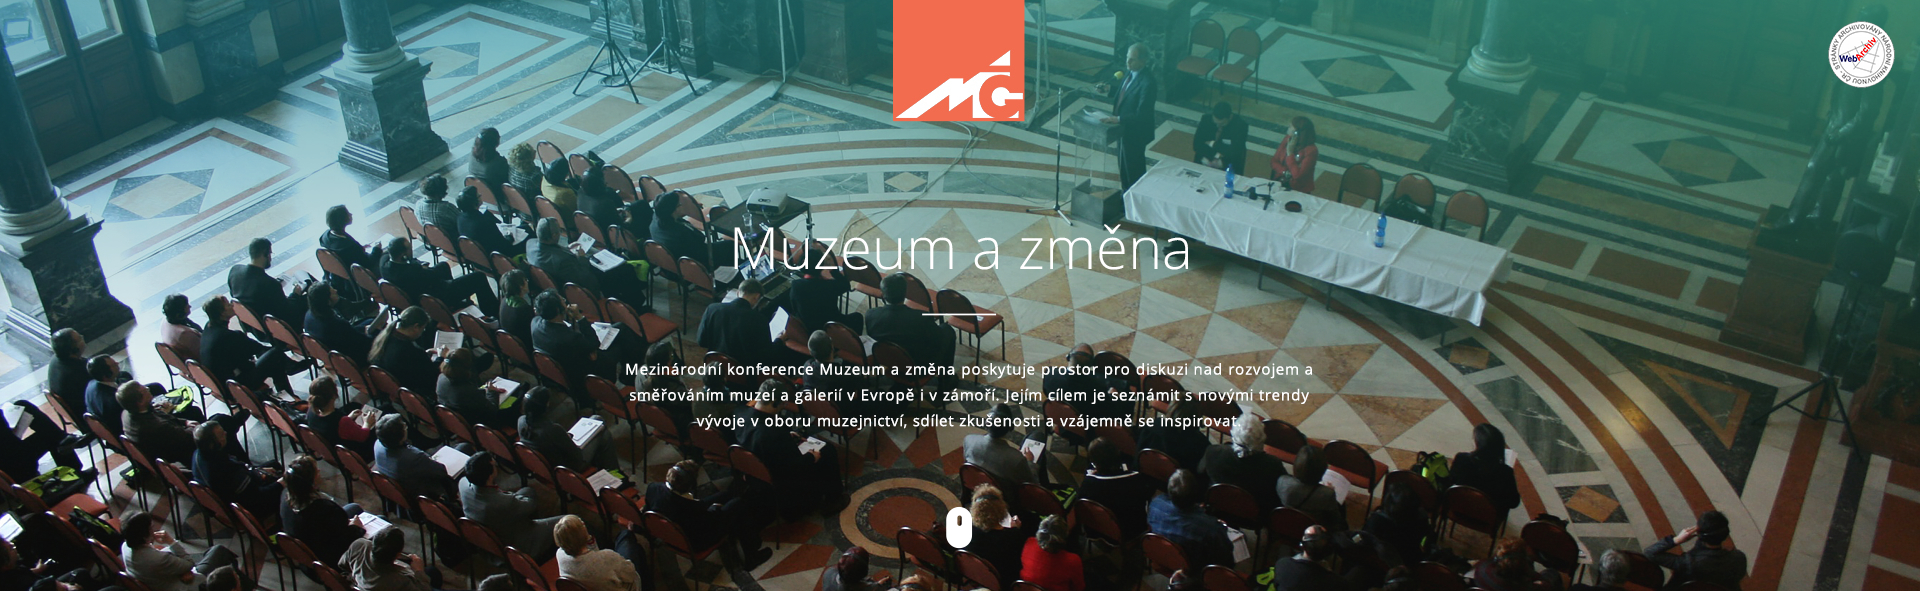 Asociace muzeí a galerií ČR - Muzeum a změna